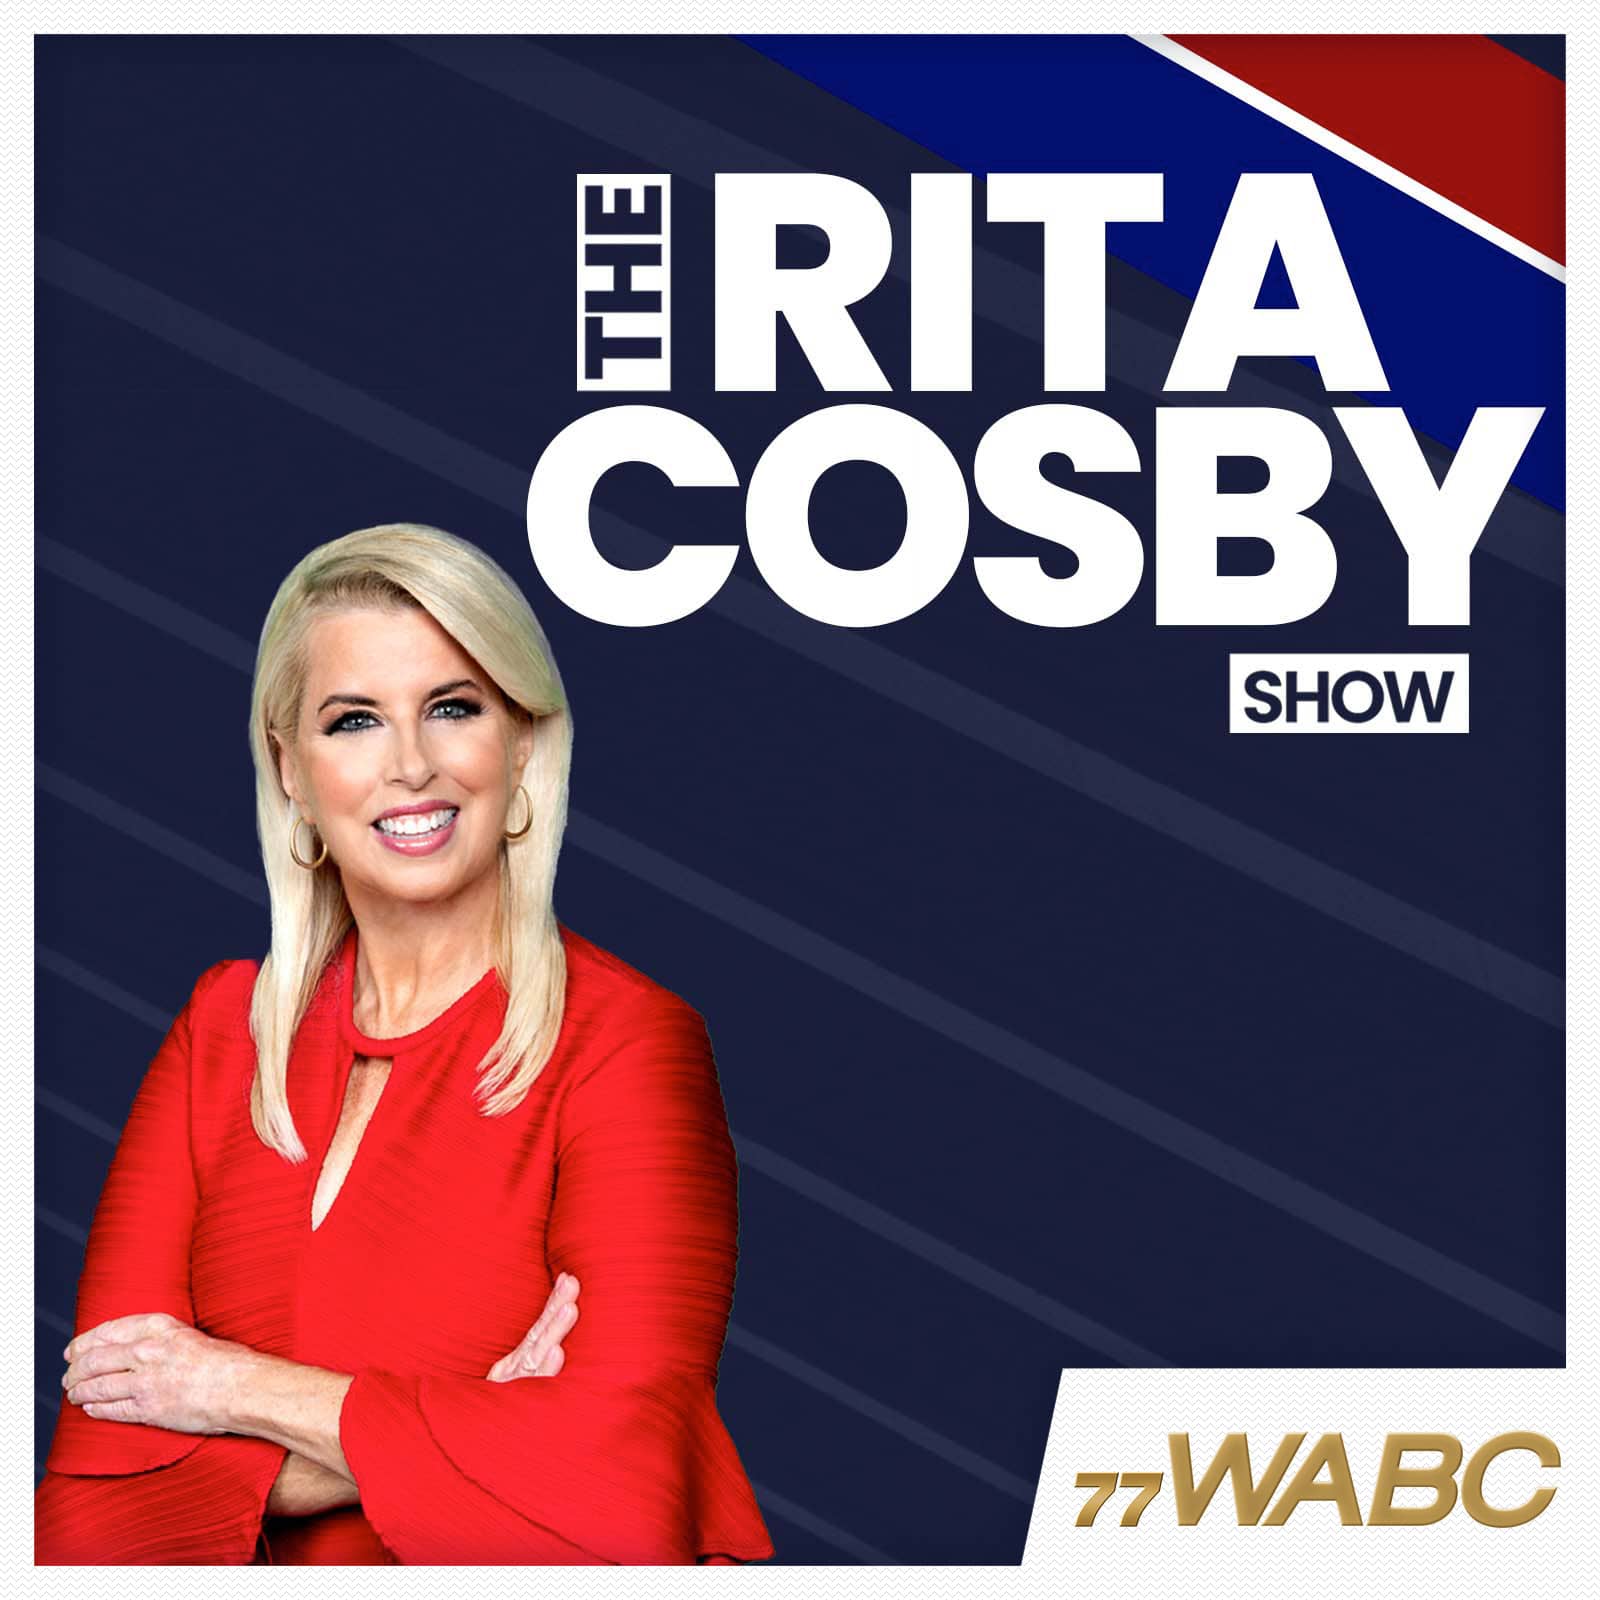 rita-cosby-podcast-new-logo495330